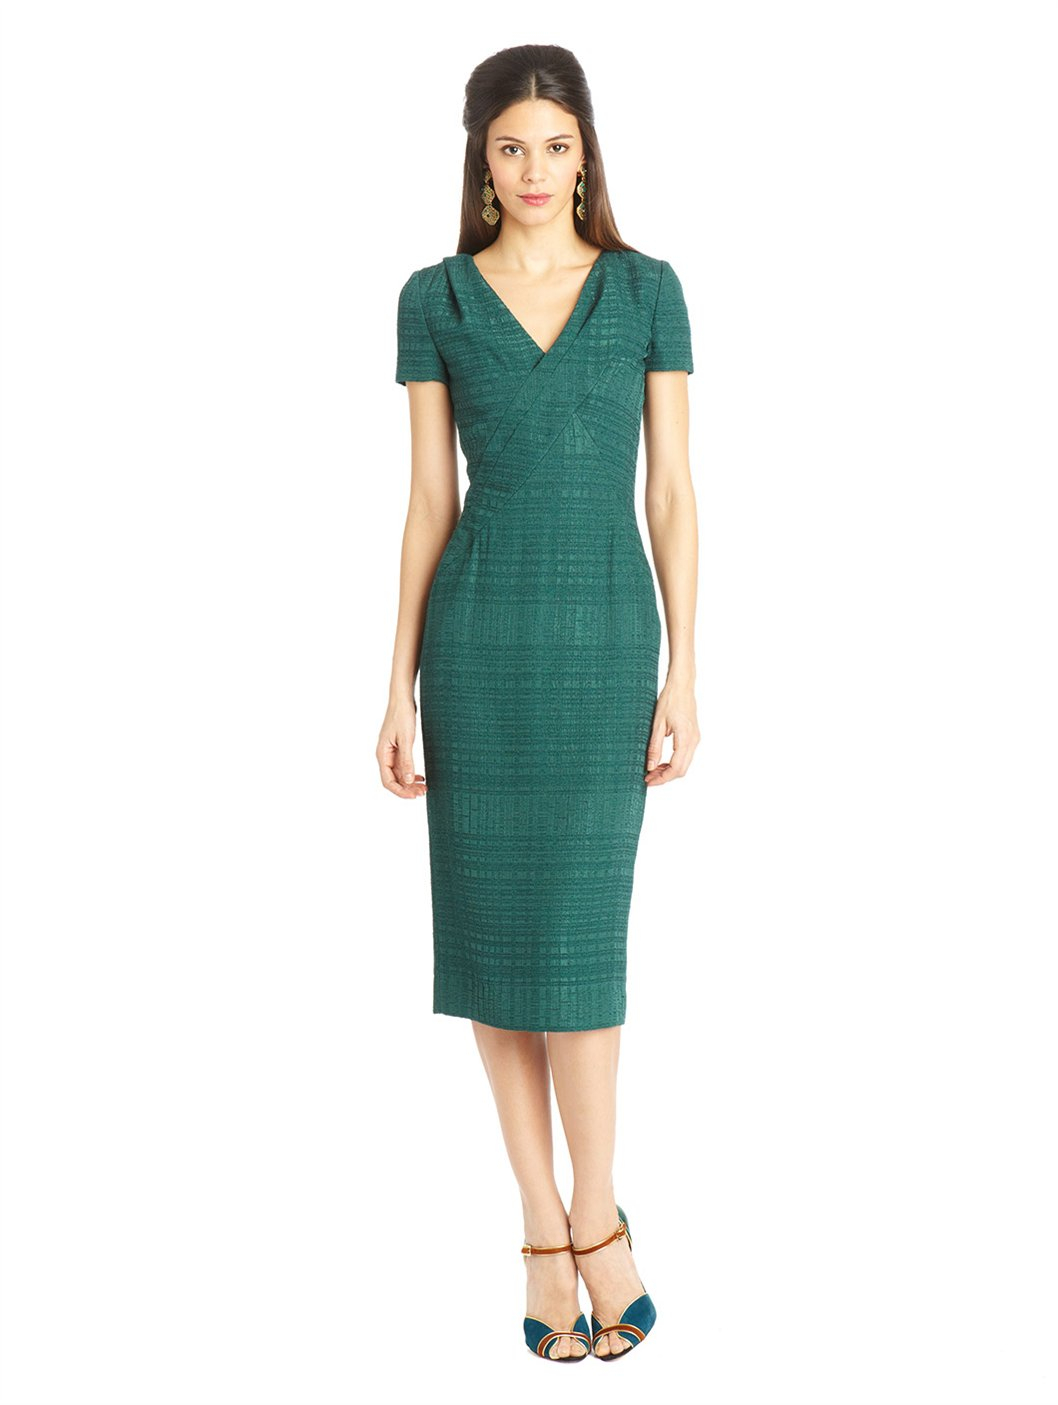 Lyst - Oscar de la renta Boucle Jacquard Dress in Green